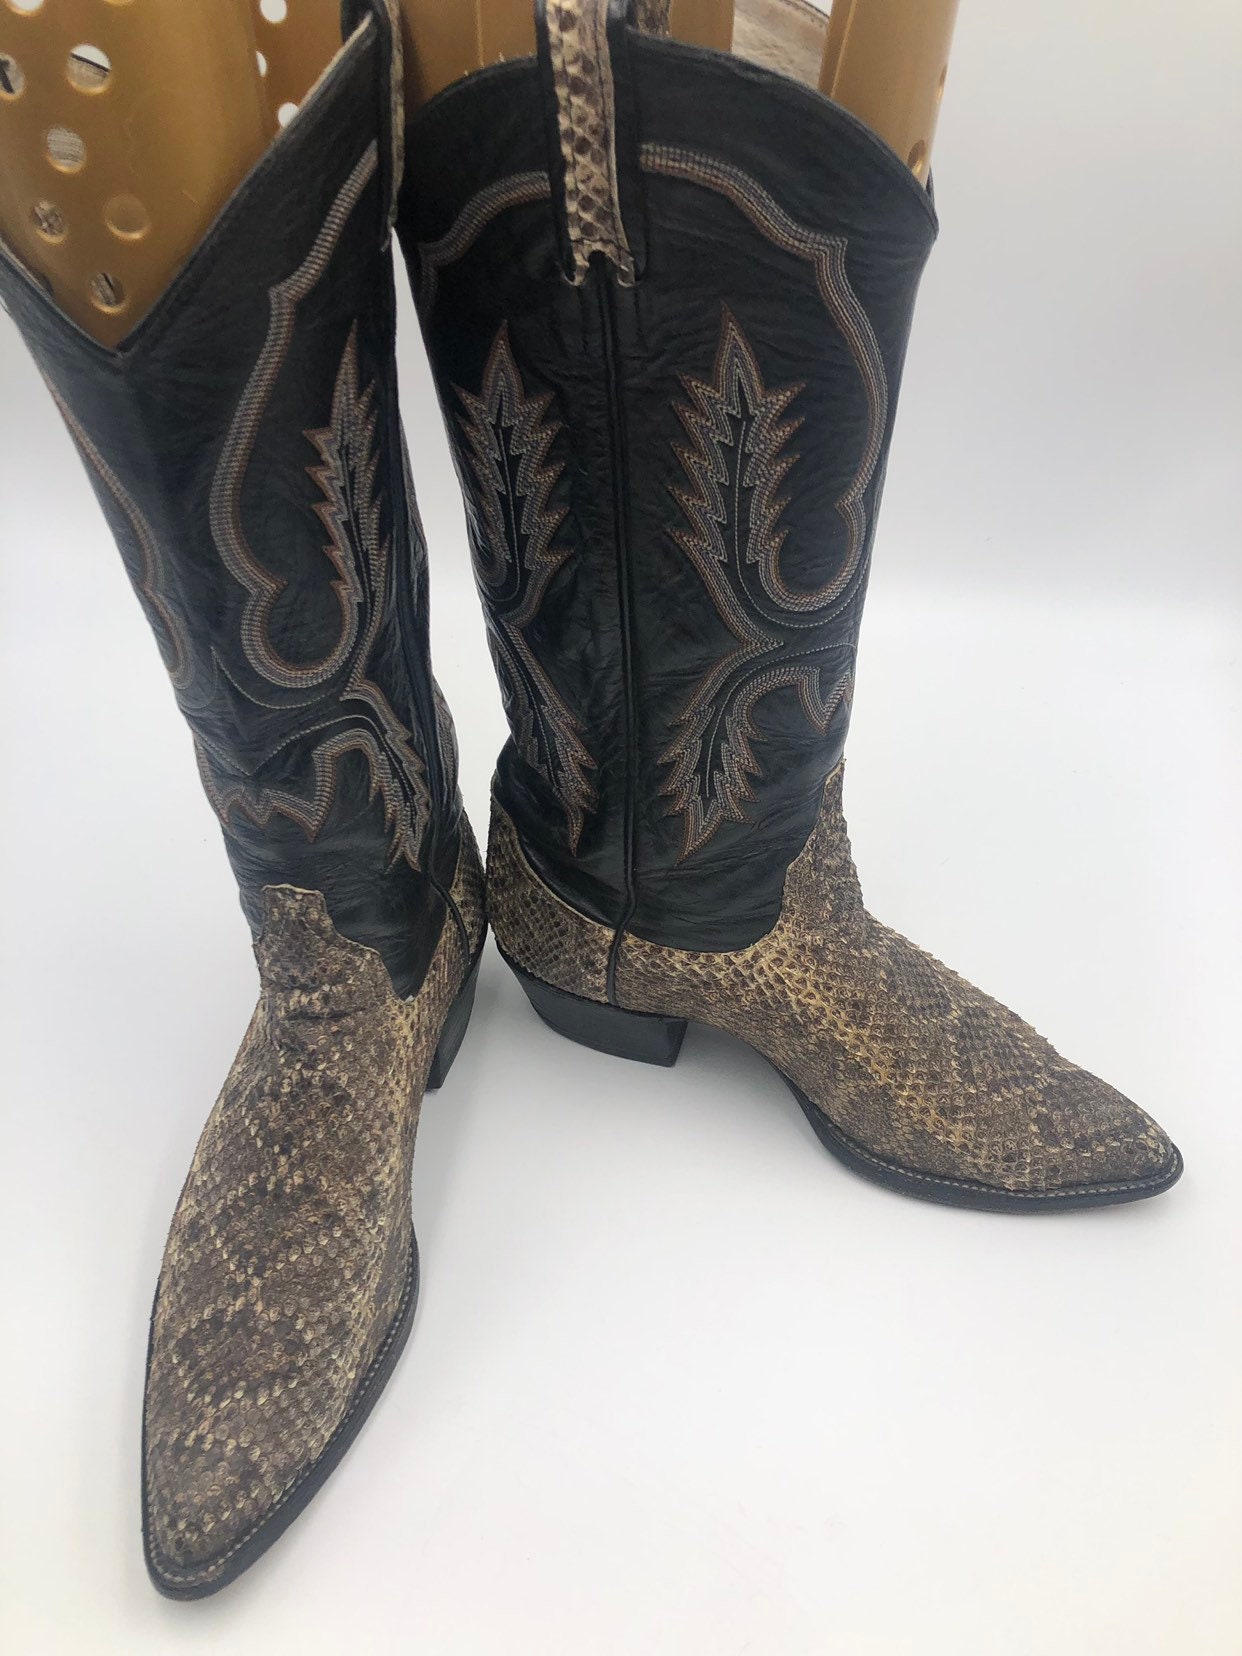 Zapatos Zapatos para hombre Botas Botas de cowboy Botas de hombre beige de cuero de serpiente real vintage bordadas con patrón único de estilo occidental botas de estilo callejero botas streetstyle tamaño 8 1/2. 